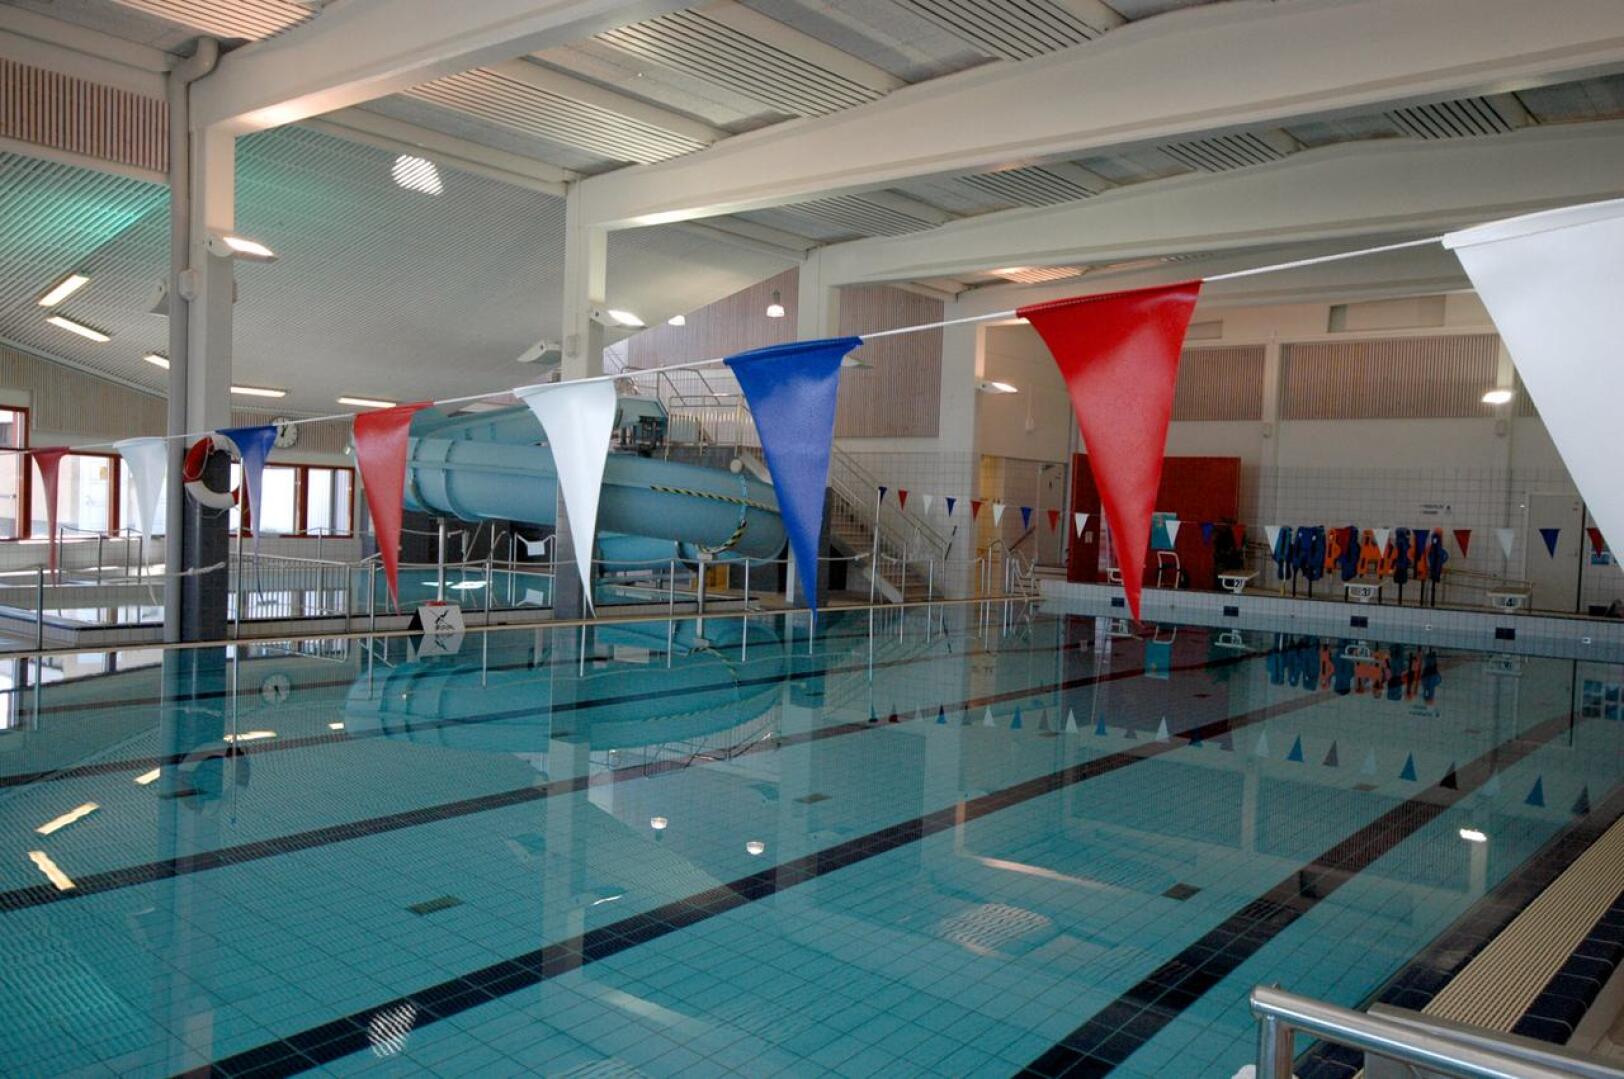 Ylivieskan uimahalli pysyy ensi viikon auki erityisjärjestelyin ja kävijämäärää rajoittaen.